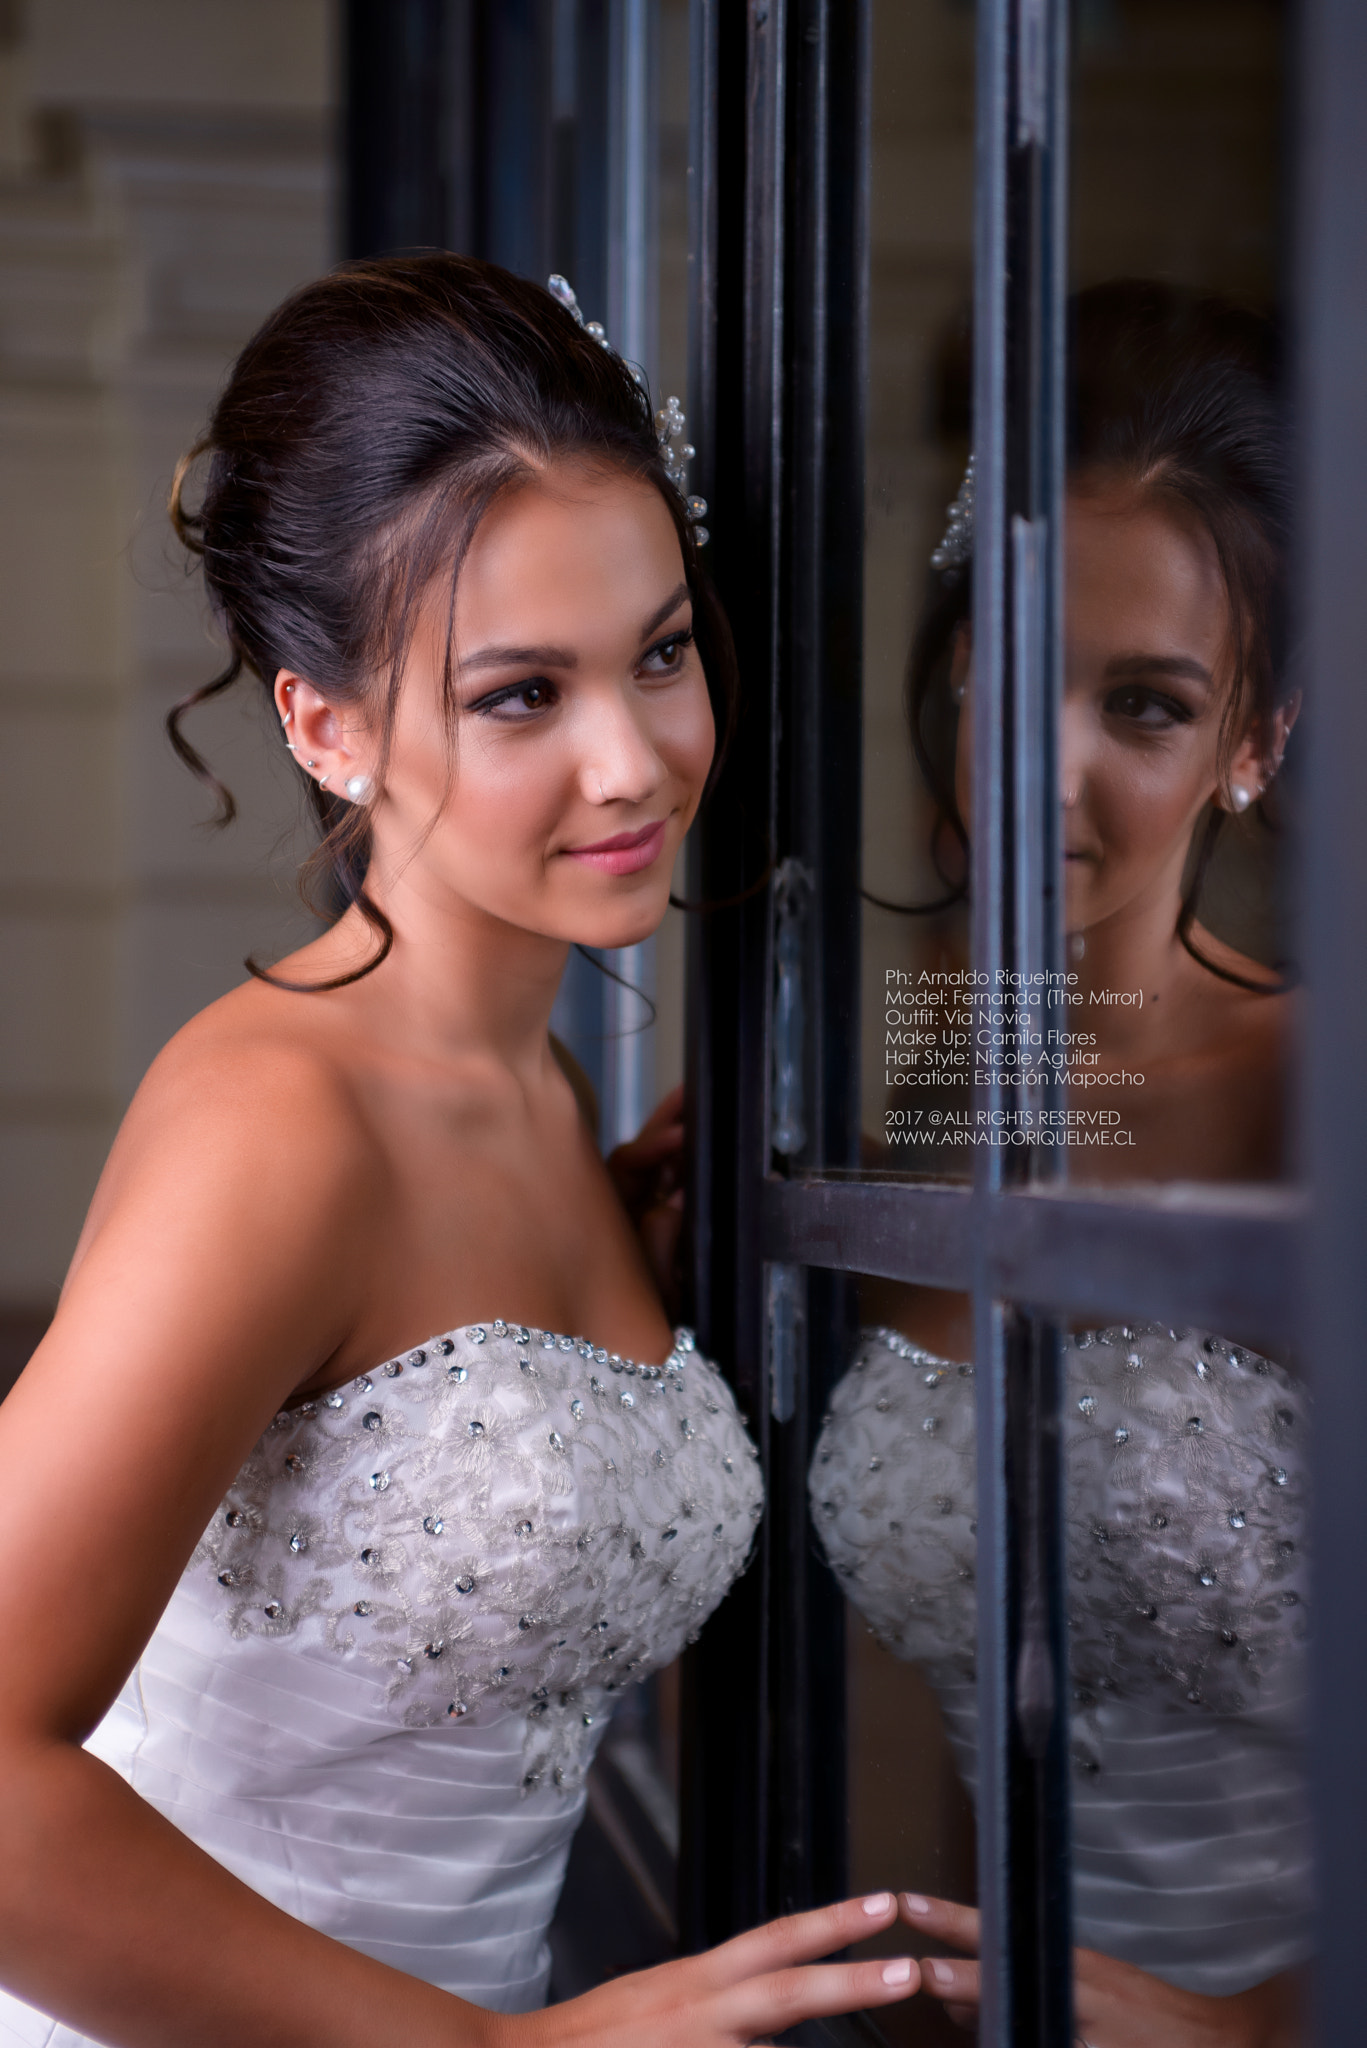 AF Zoom-Nikkor 35-70mm f/2.8D sample photo. Fernanda 3 - brides - fashionshoots photography